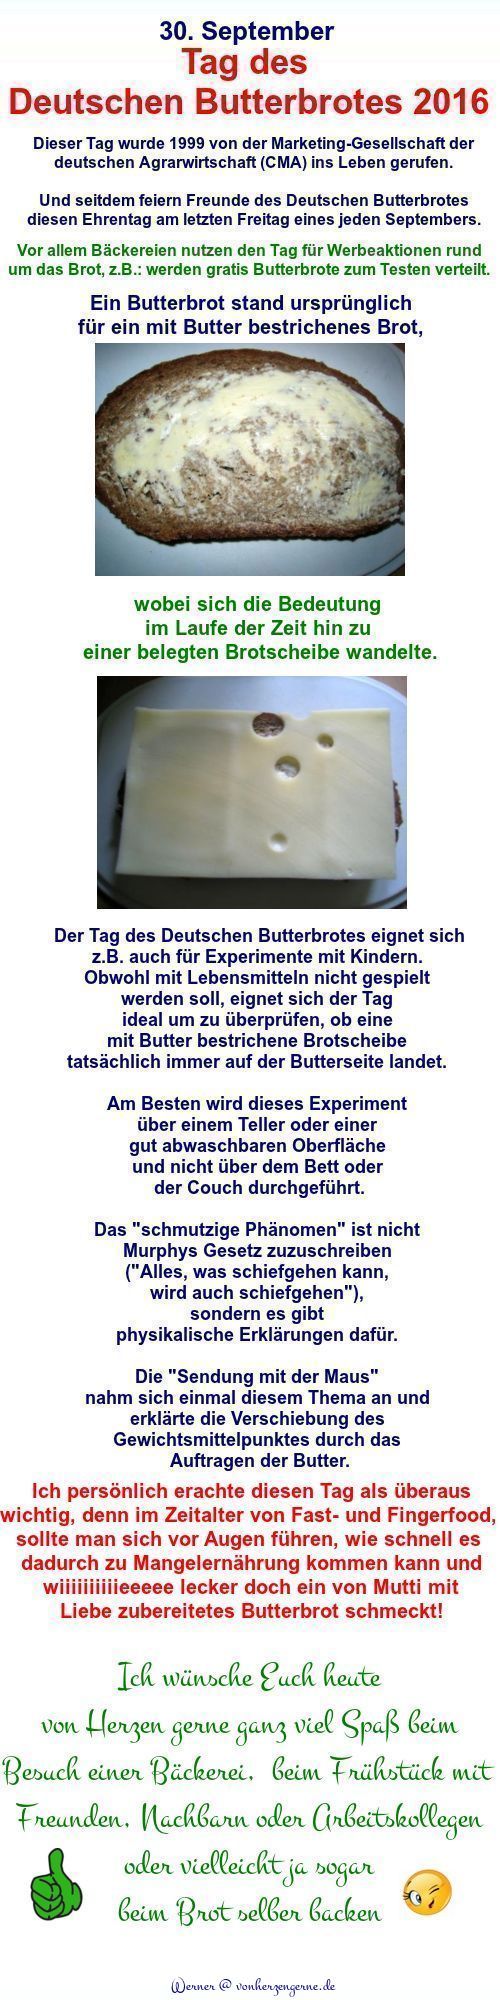 Tag des Deutschen Butterbrotes 2016